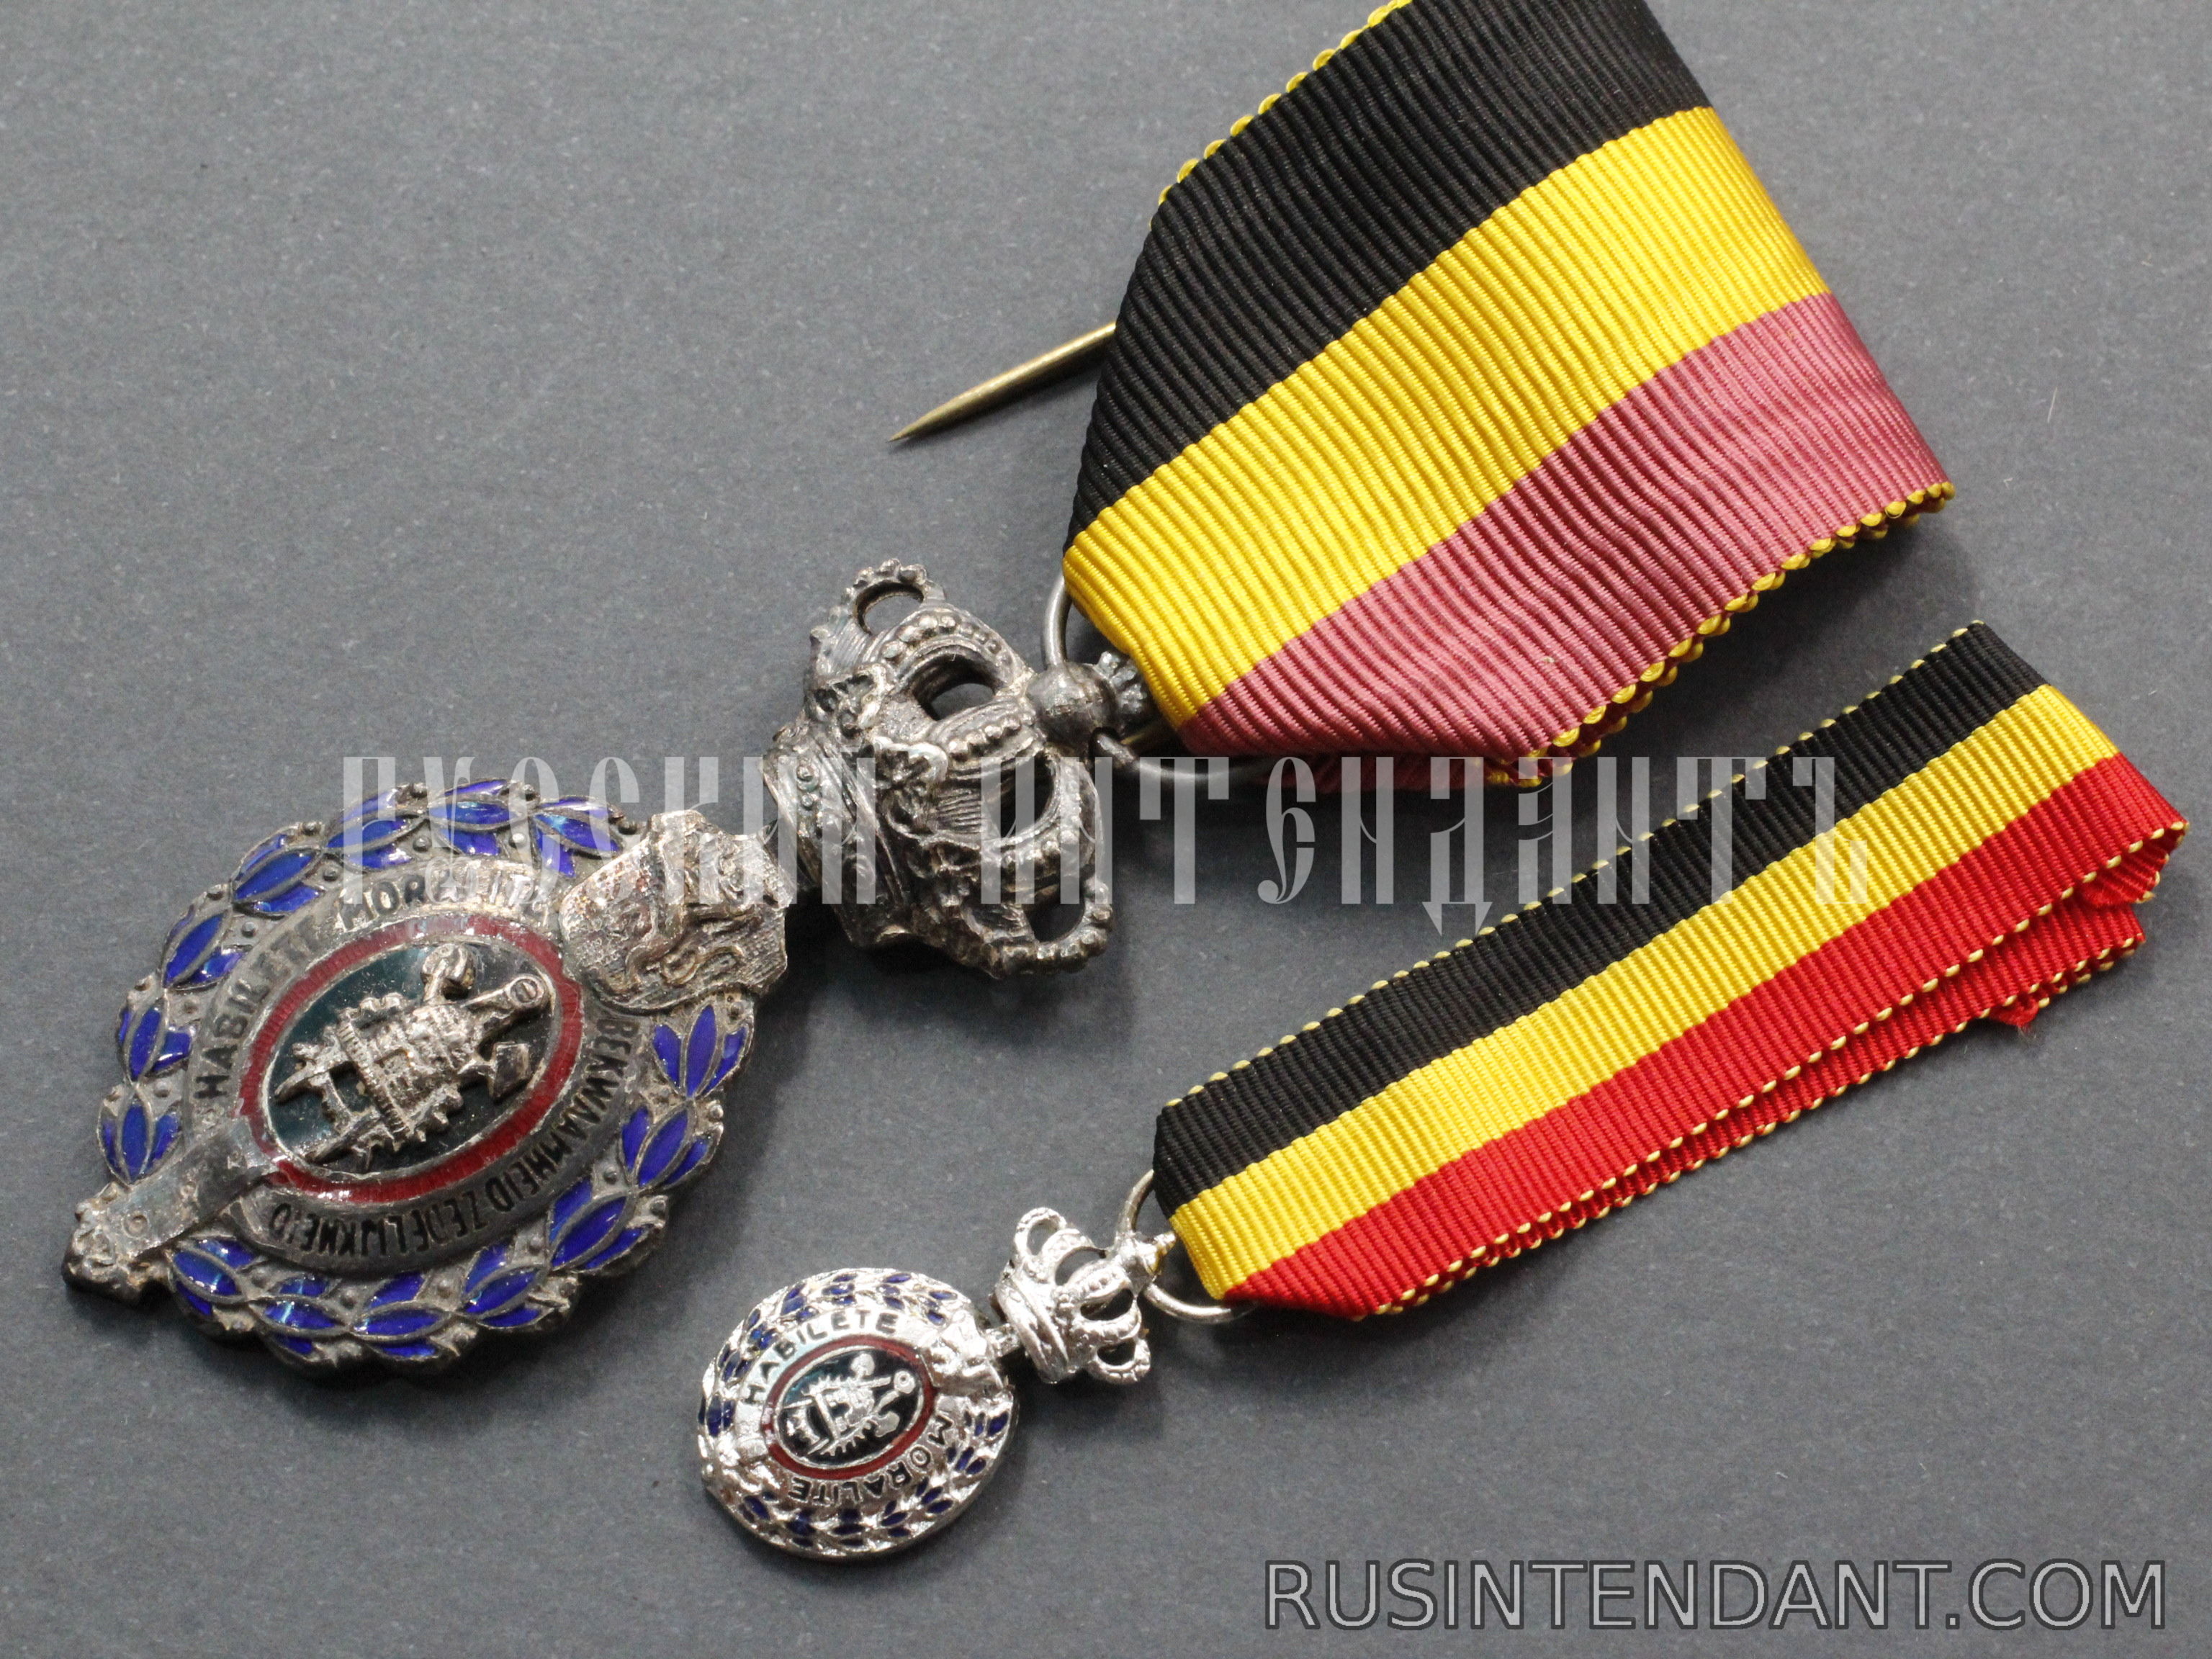 Фото 4: Бельгийская трудовая медаль 2 степени 